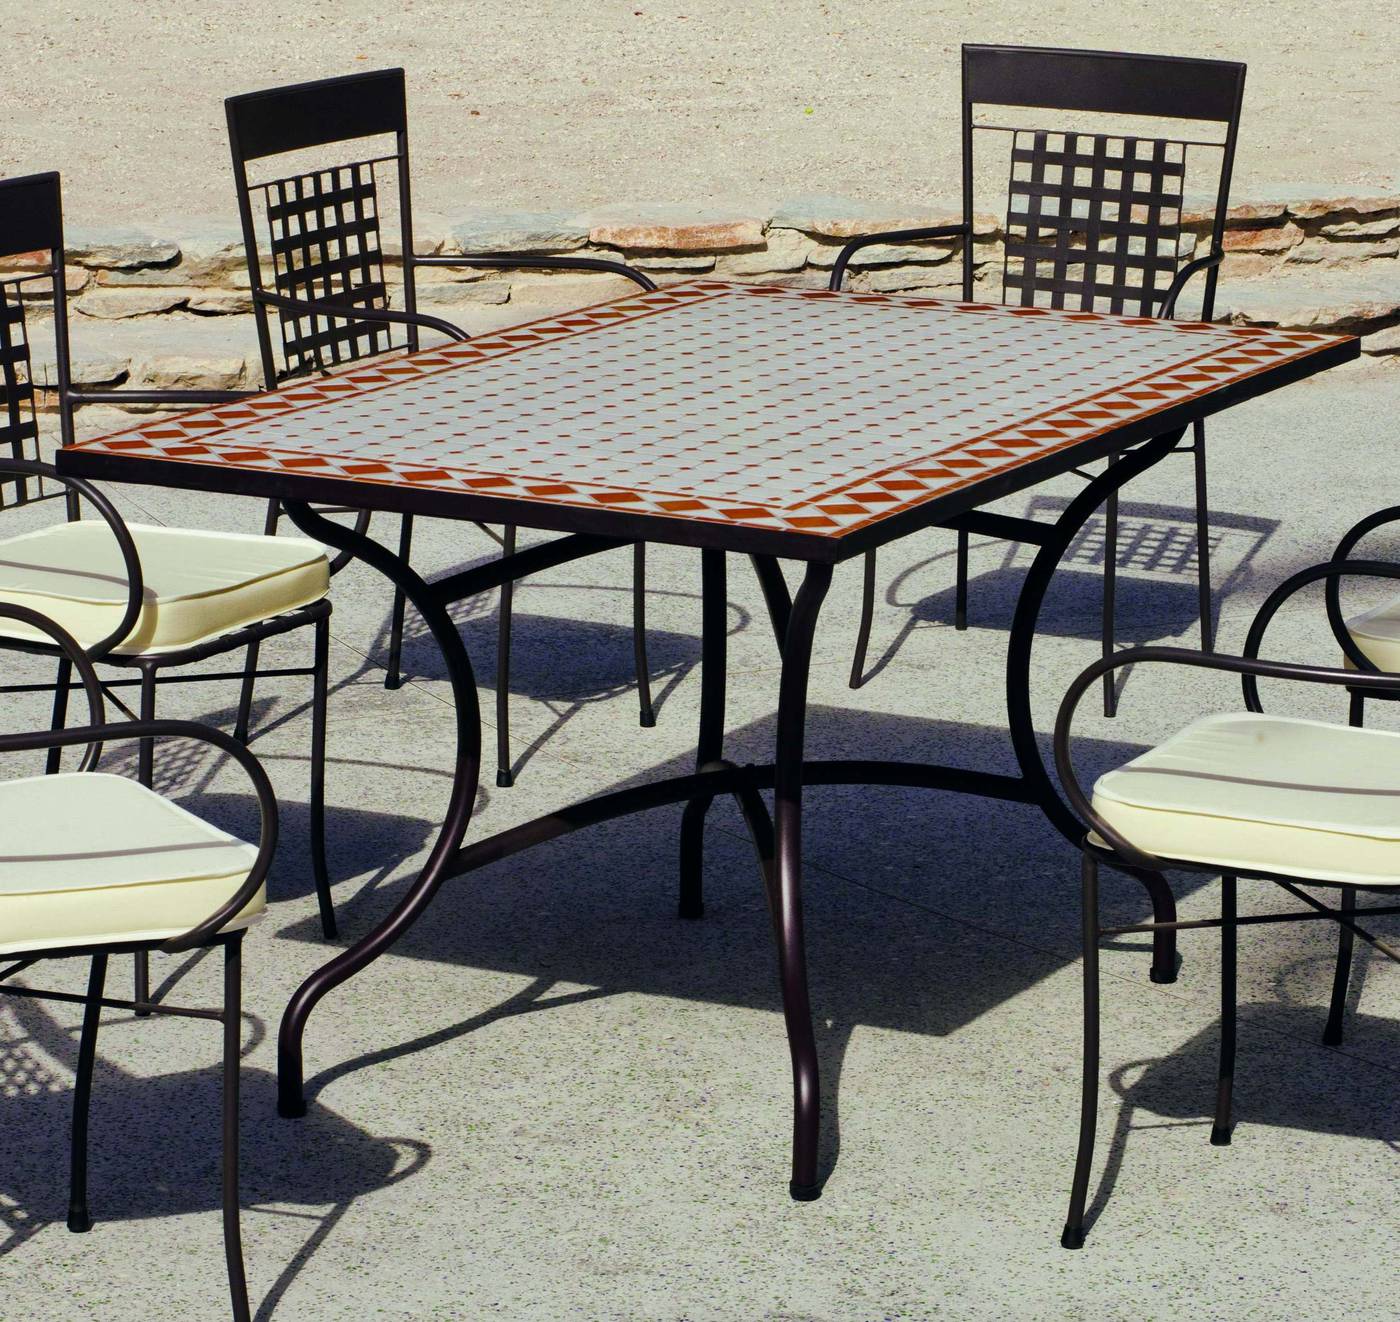 Conjunto Mosaico Atrium-Bahia 150-4 - Conjunto de forja para jardín o terraza: 1 mesa de forja con panel mosaico + 4 sillones de ratán sintético + 4 cojines. Mesa válida para 6 sillones.